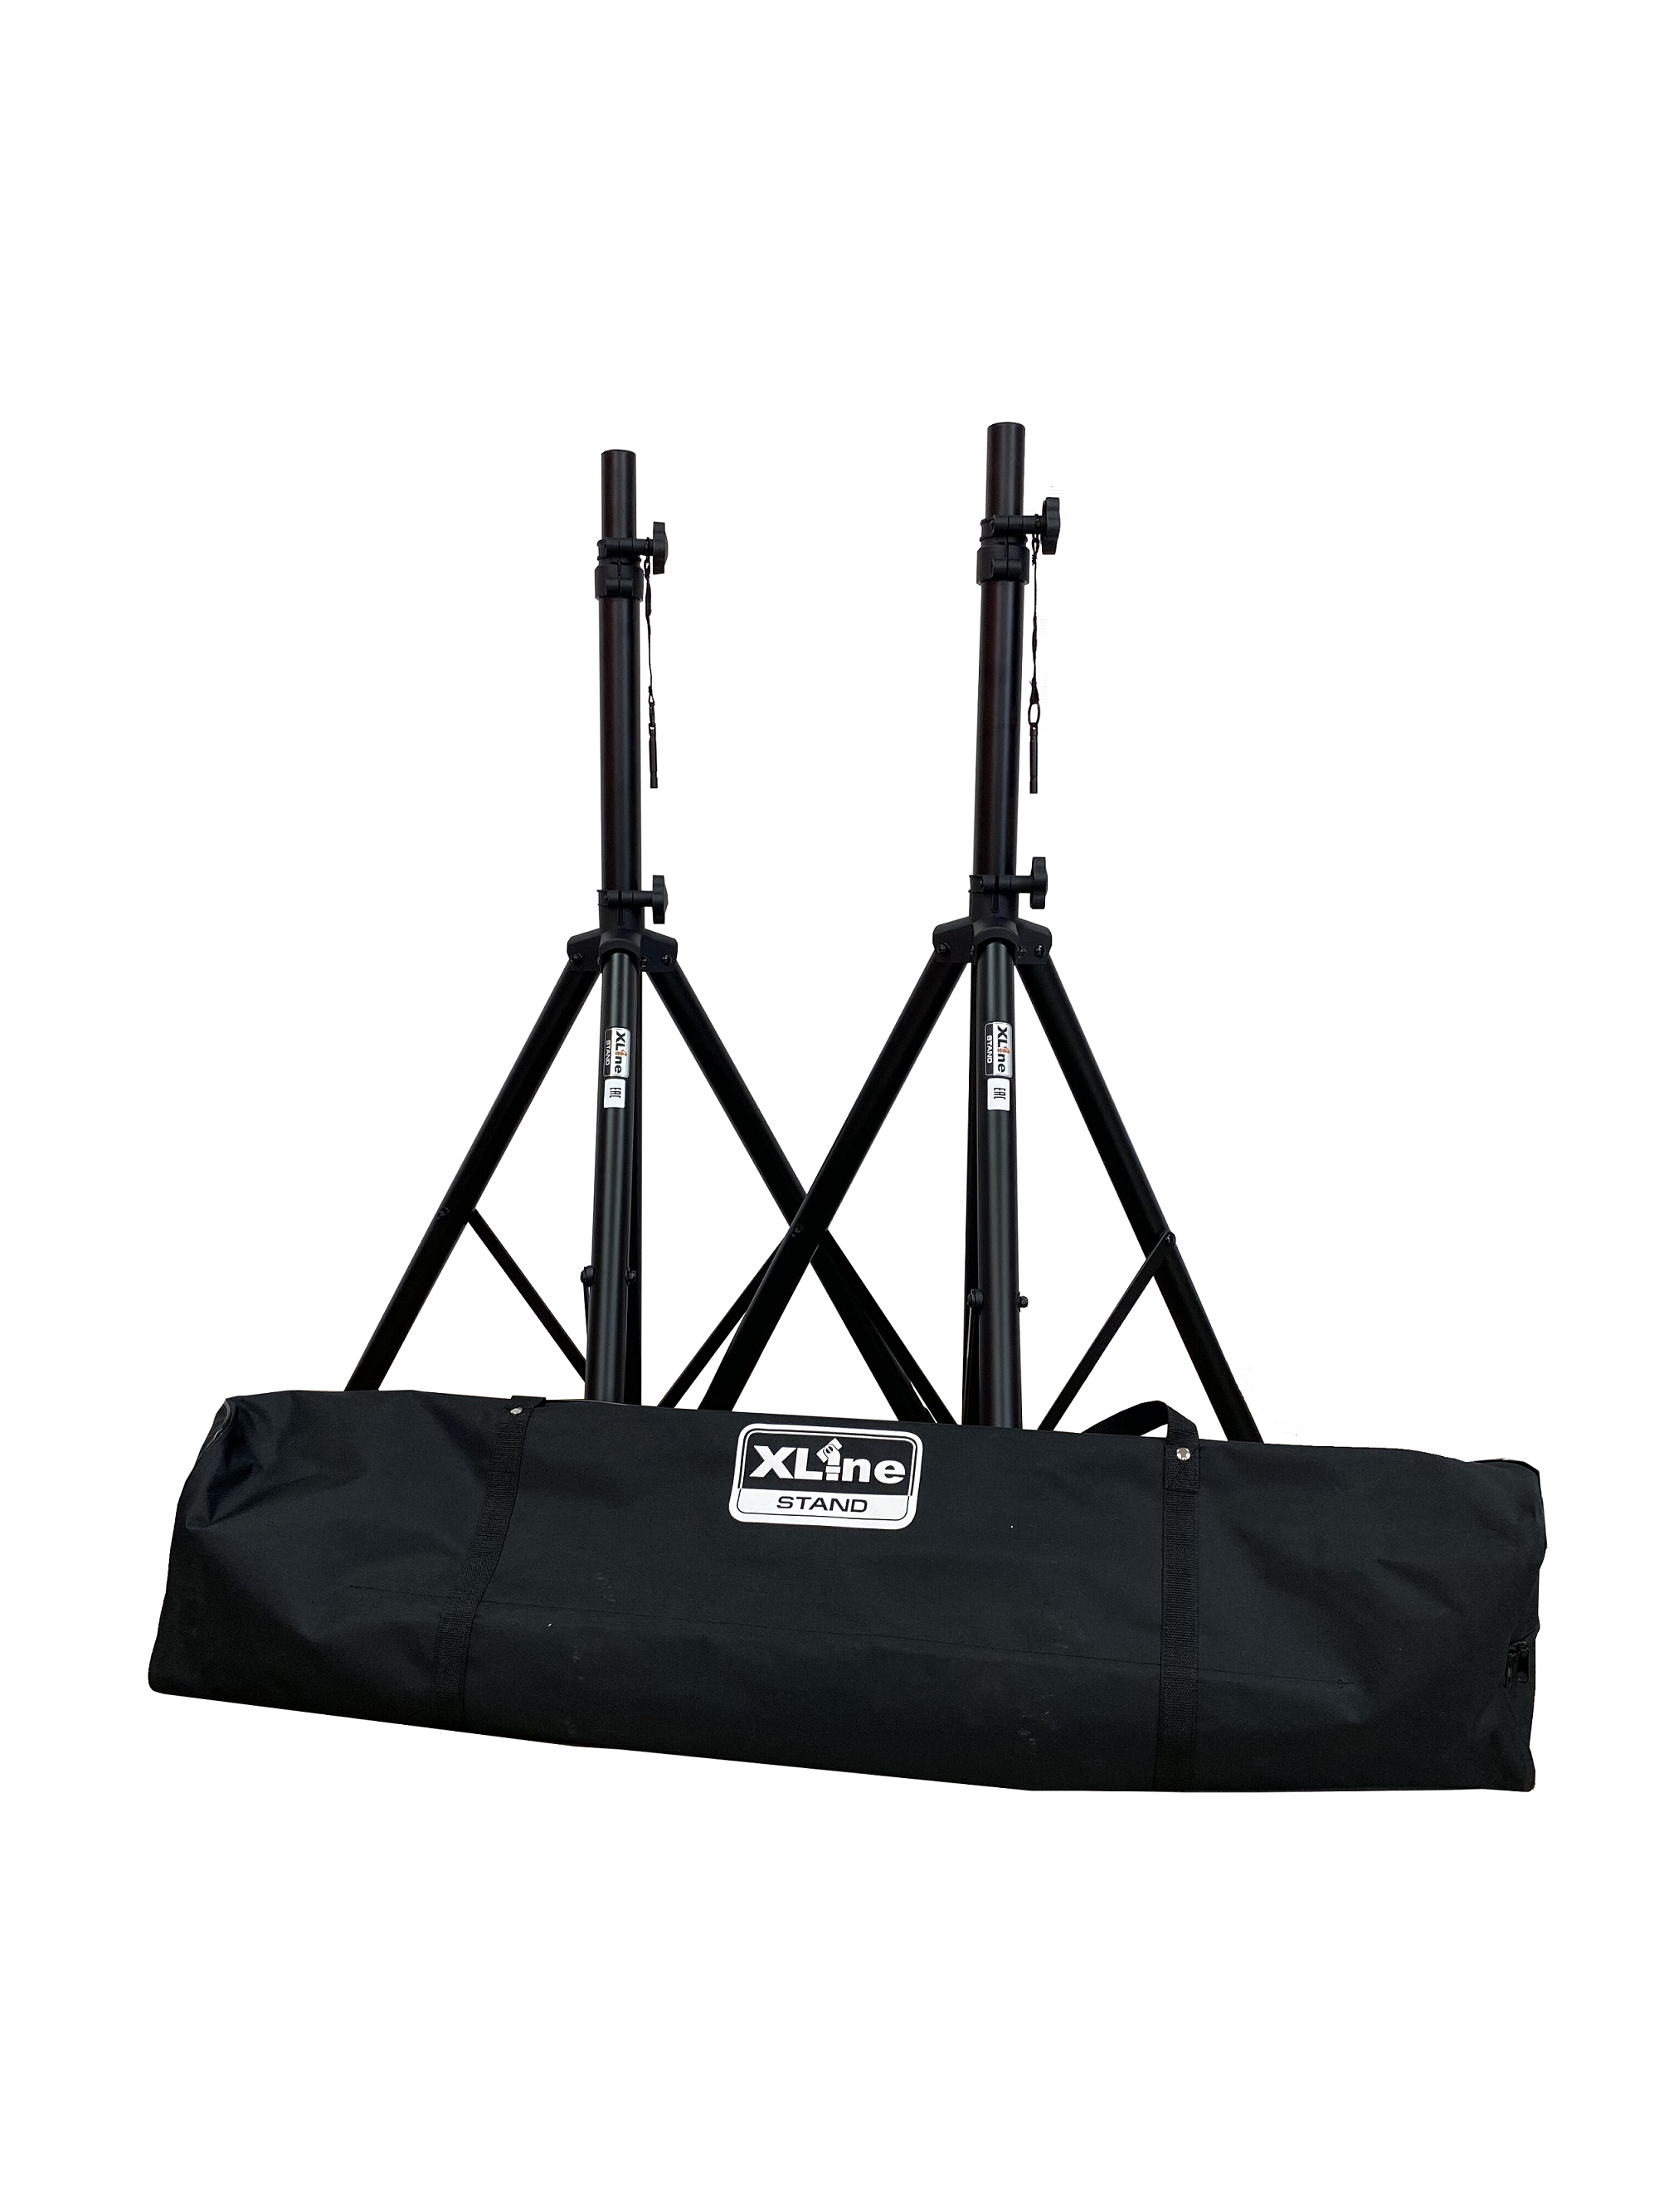 XLine Stand AS-8SET - комплект 2 стойки для акустических систем с сумкой-чехлом